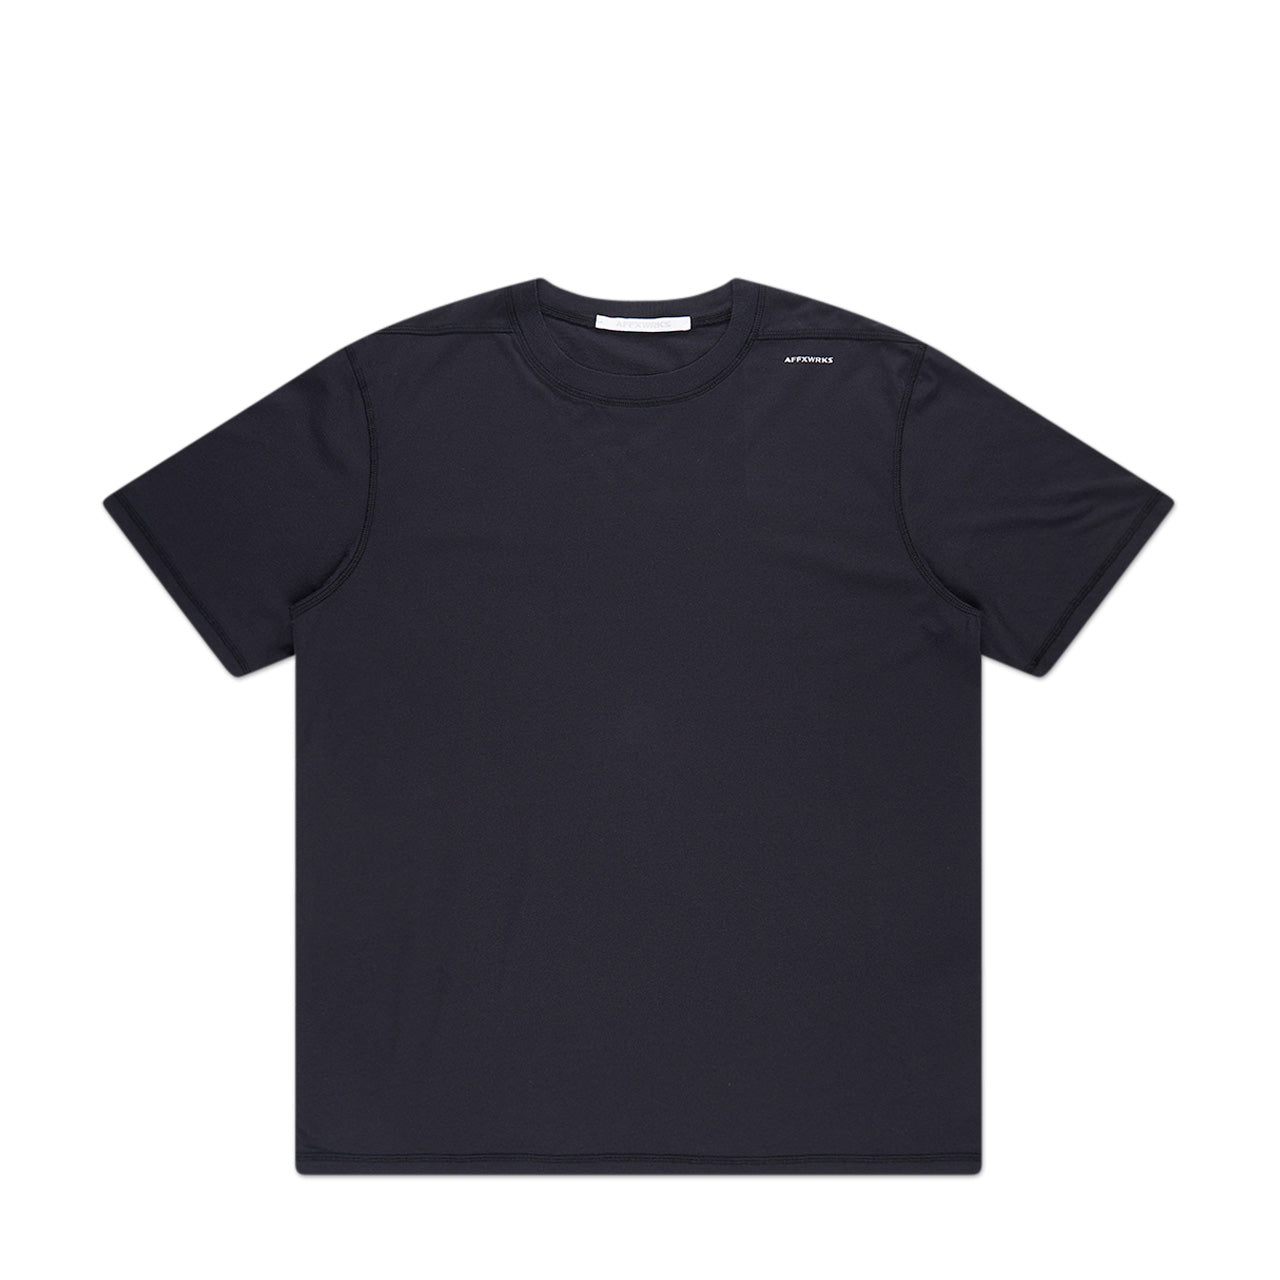 affxwrks wrks t-shirt (washed black)